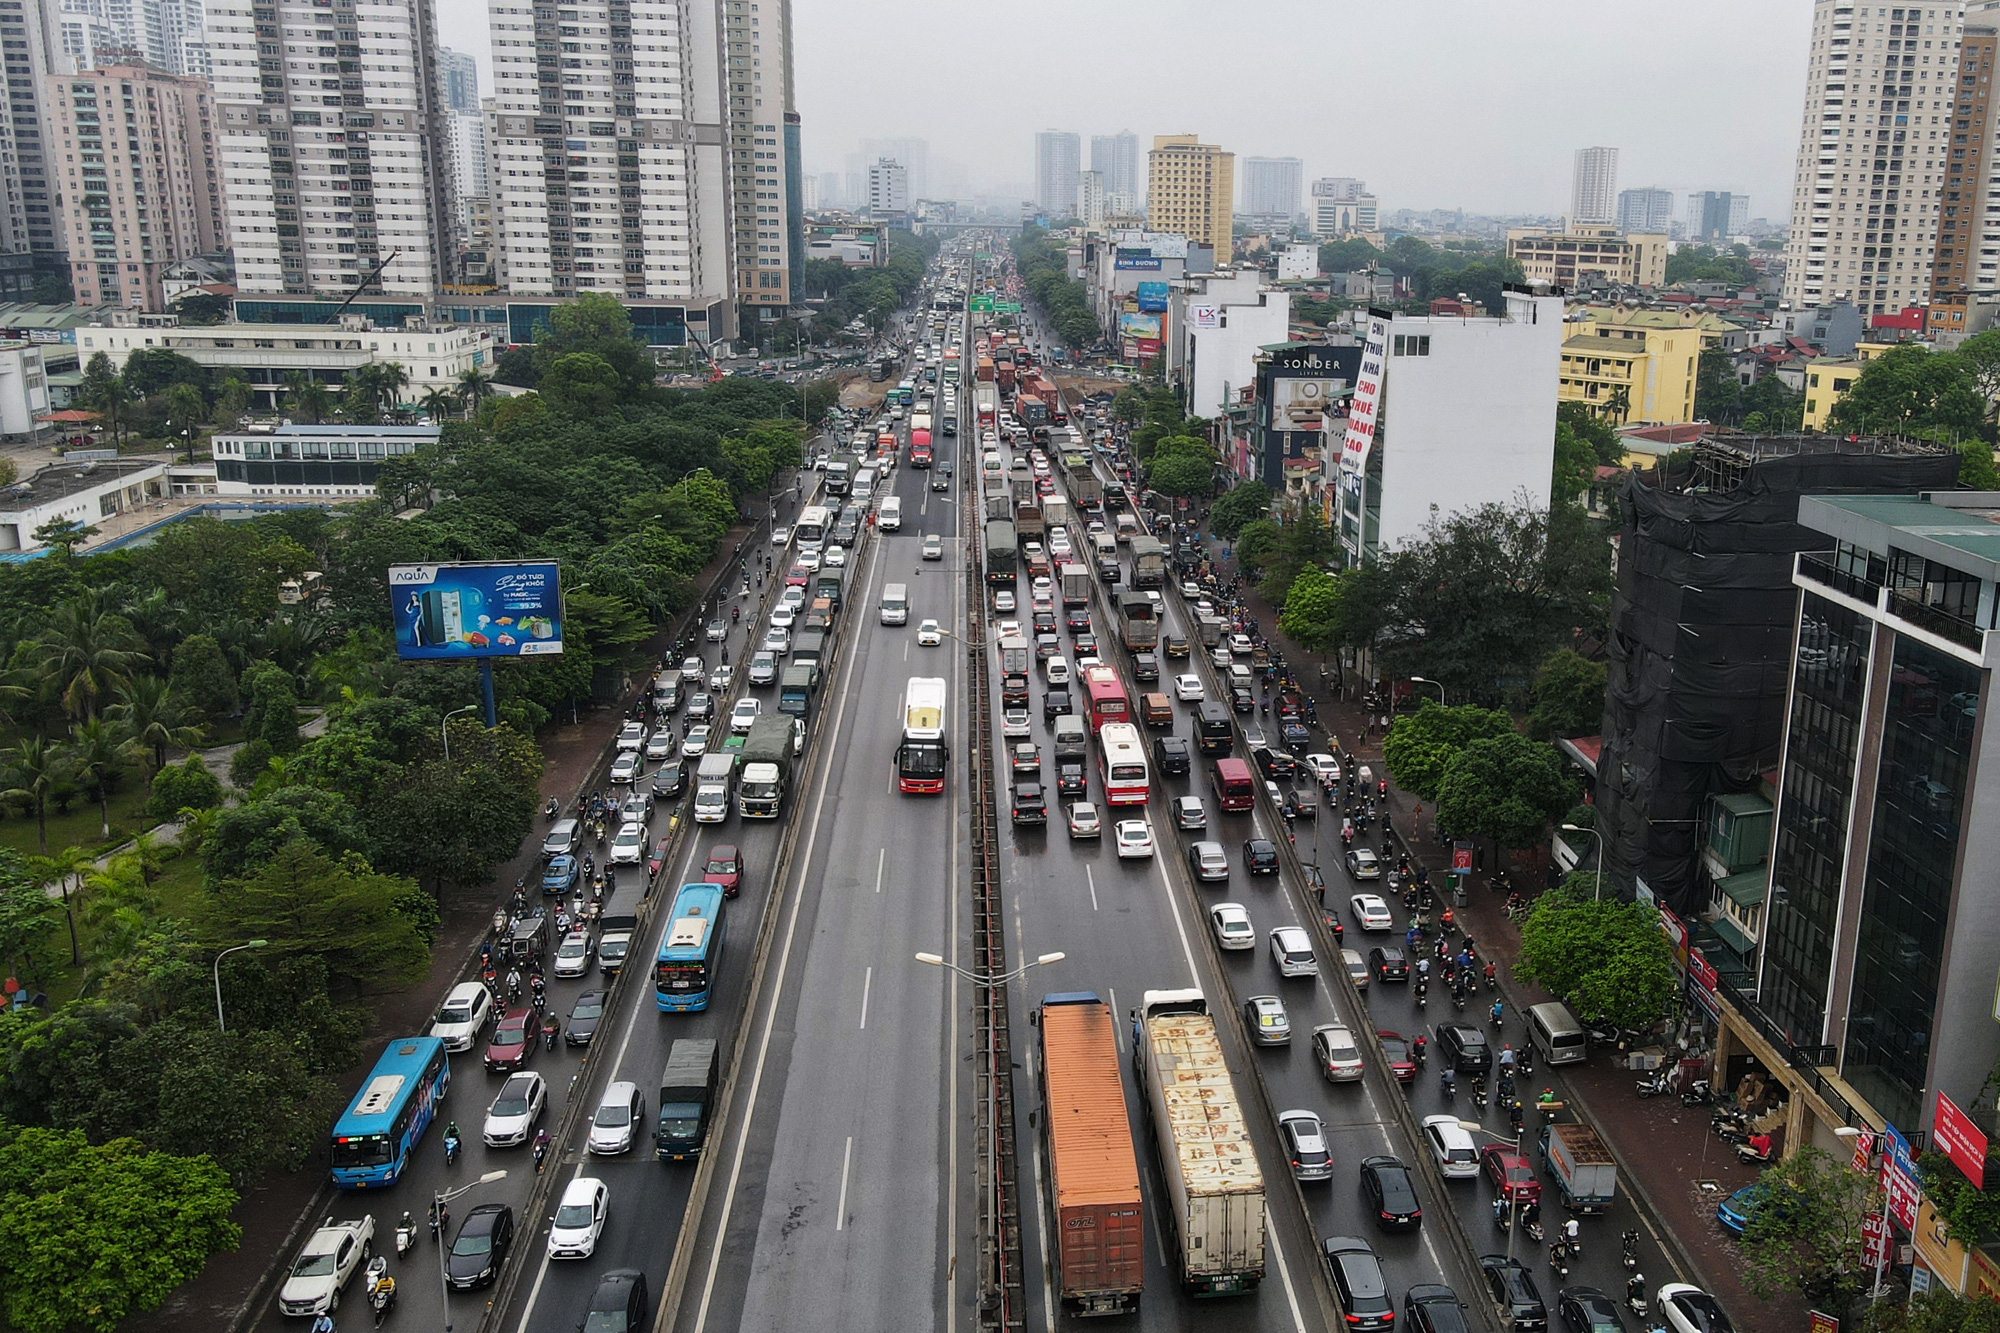 CẤP BÁO: Đường phố Hà Nội đang kẹt cứng, hàng nghìn người về quê nghỉ lễ chôn chân trong mưa - Ảnh 8.